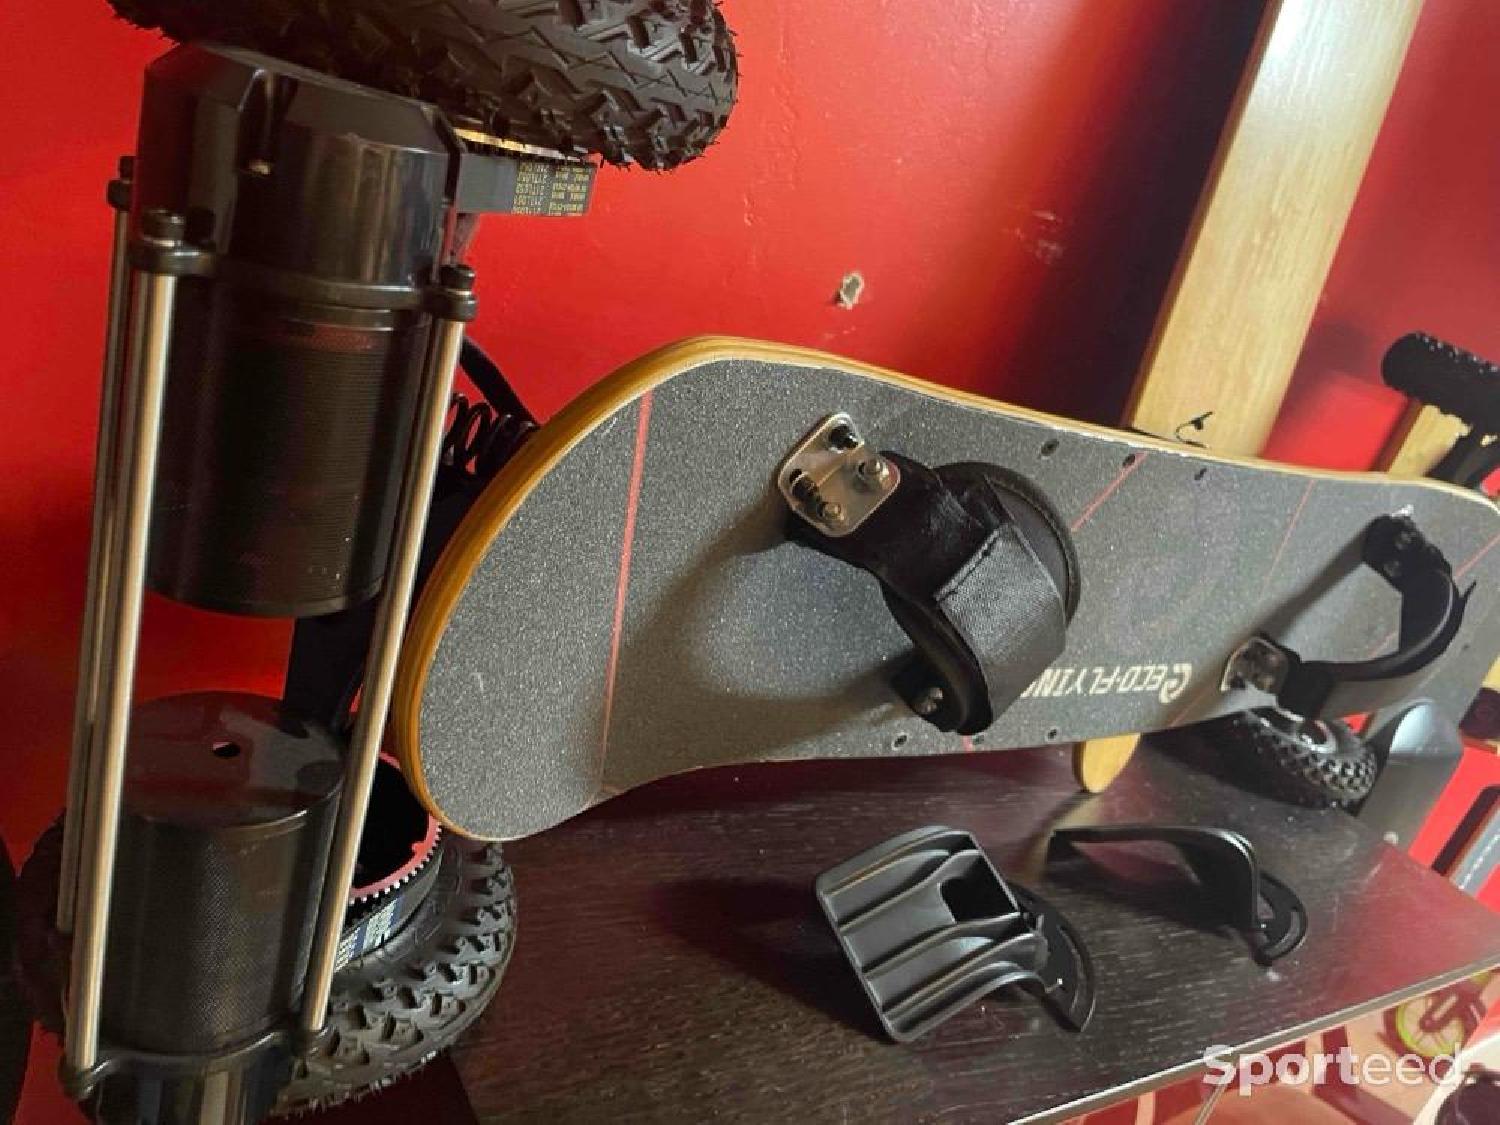 Un skateboard électrique tout-terrain roulant jusqu'à 48 km/h